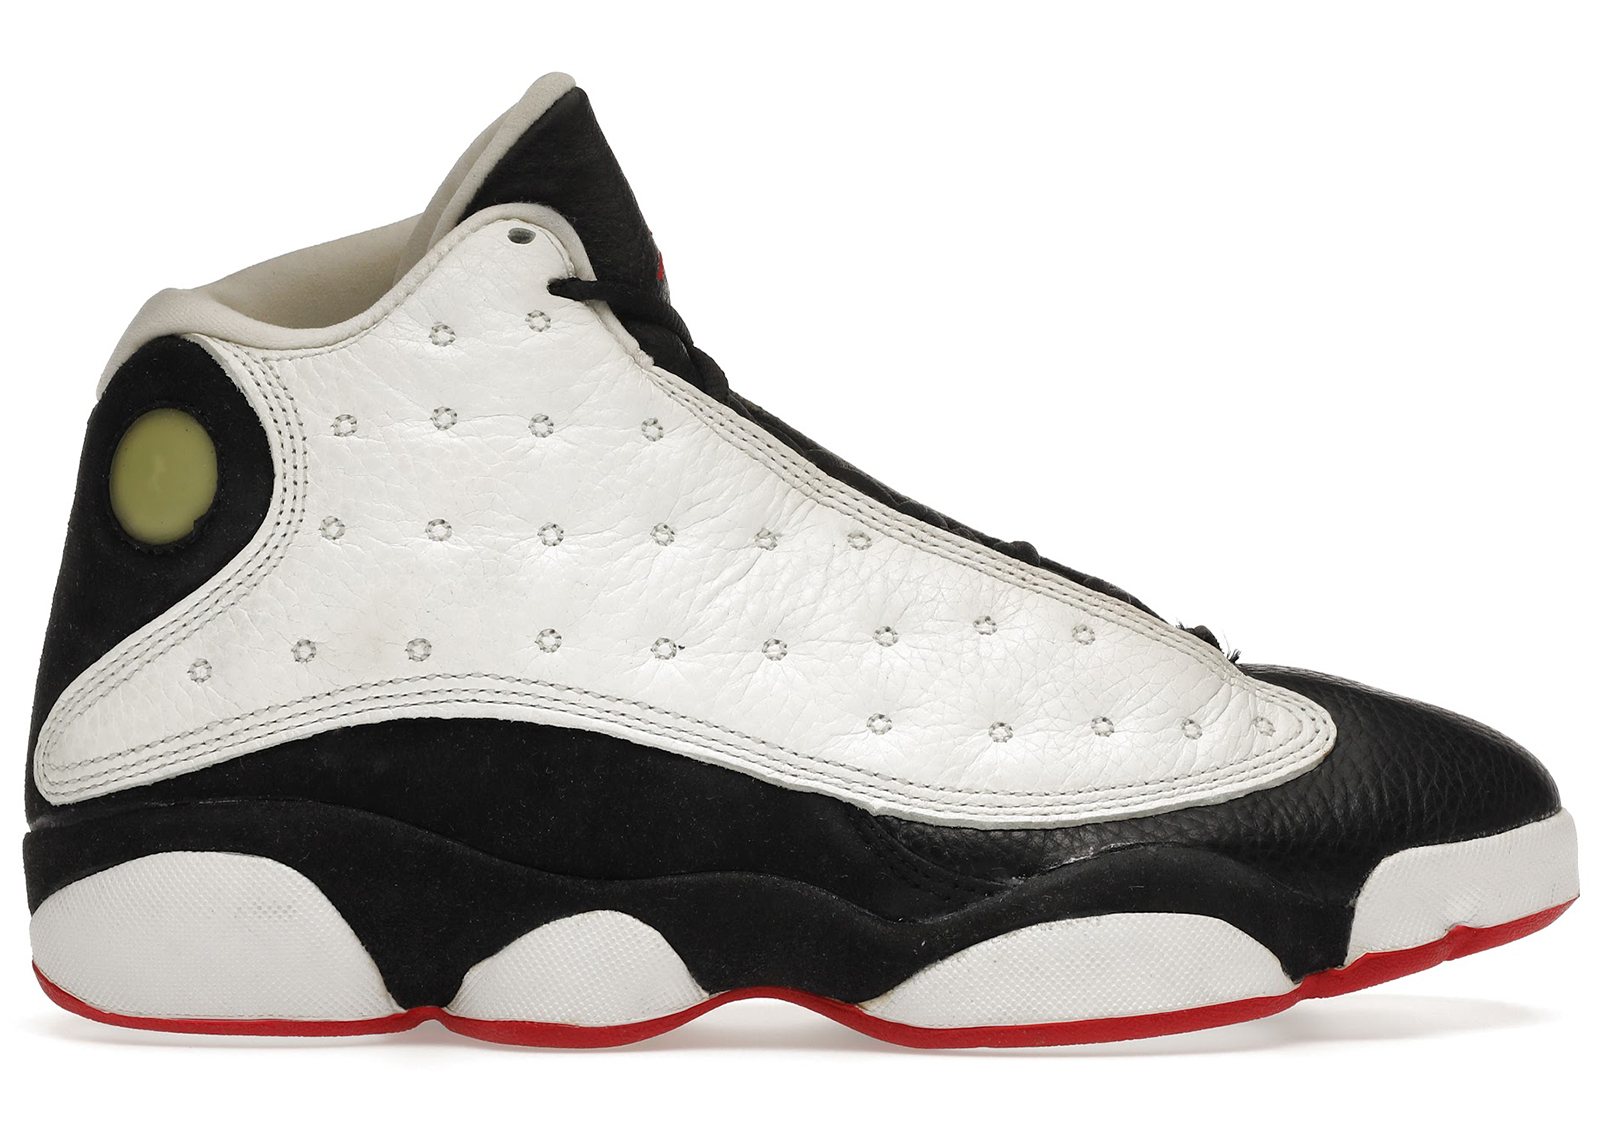 Air Jordan 13 OG 'He Got Game' 1997 Sneakers | White | Men's Size 10.5